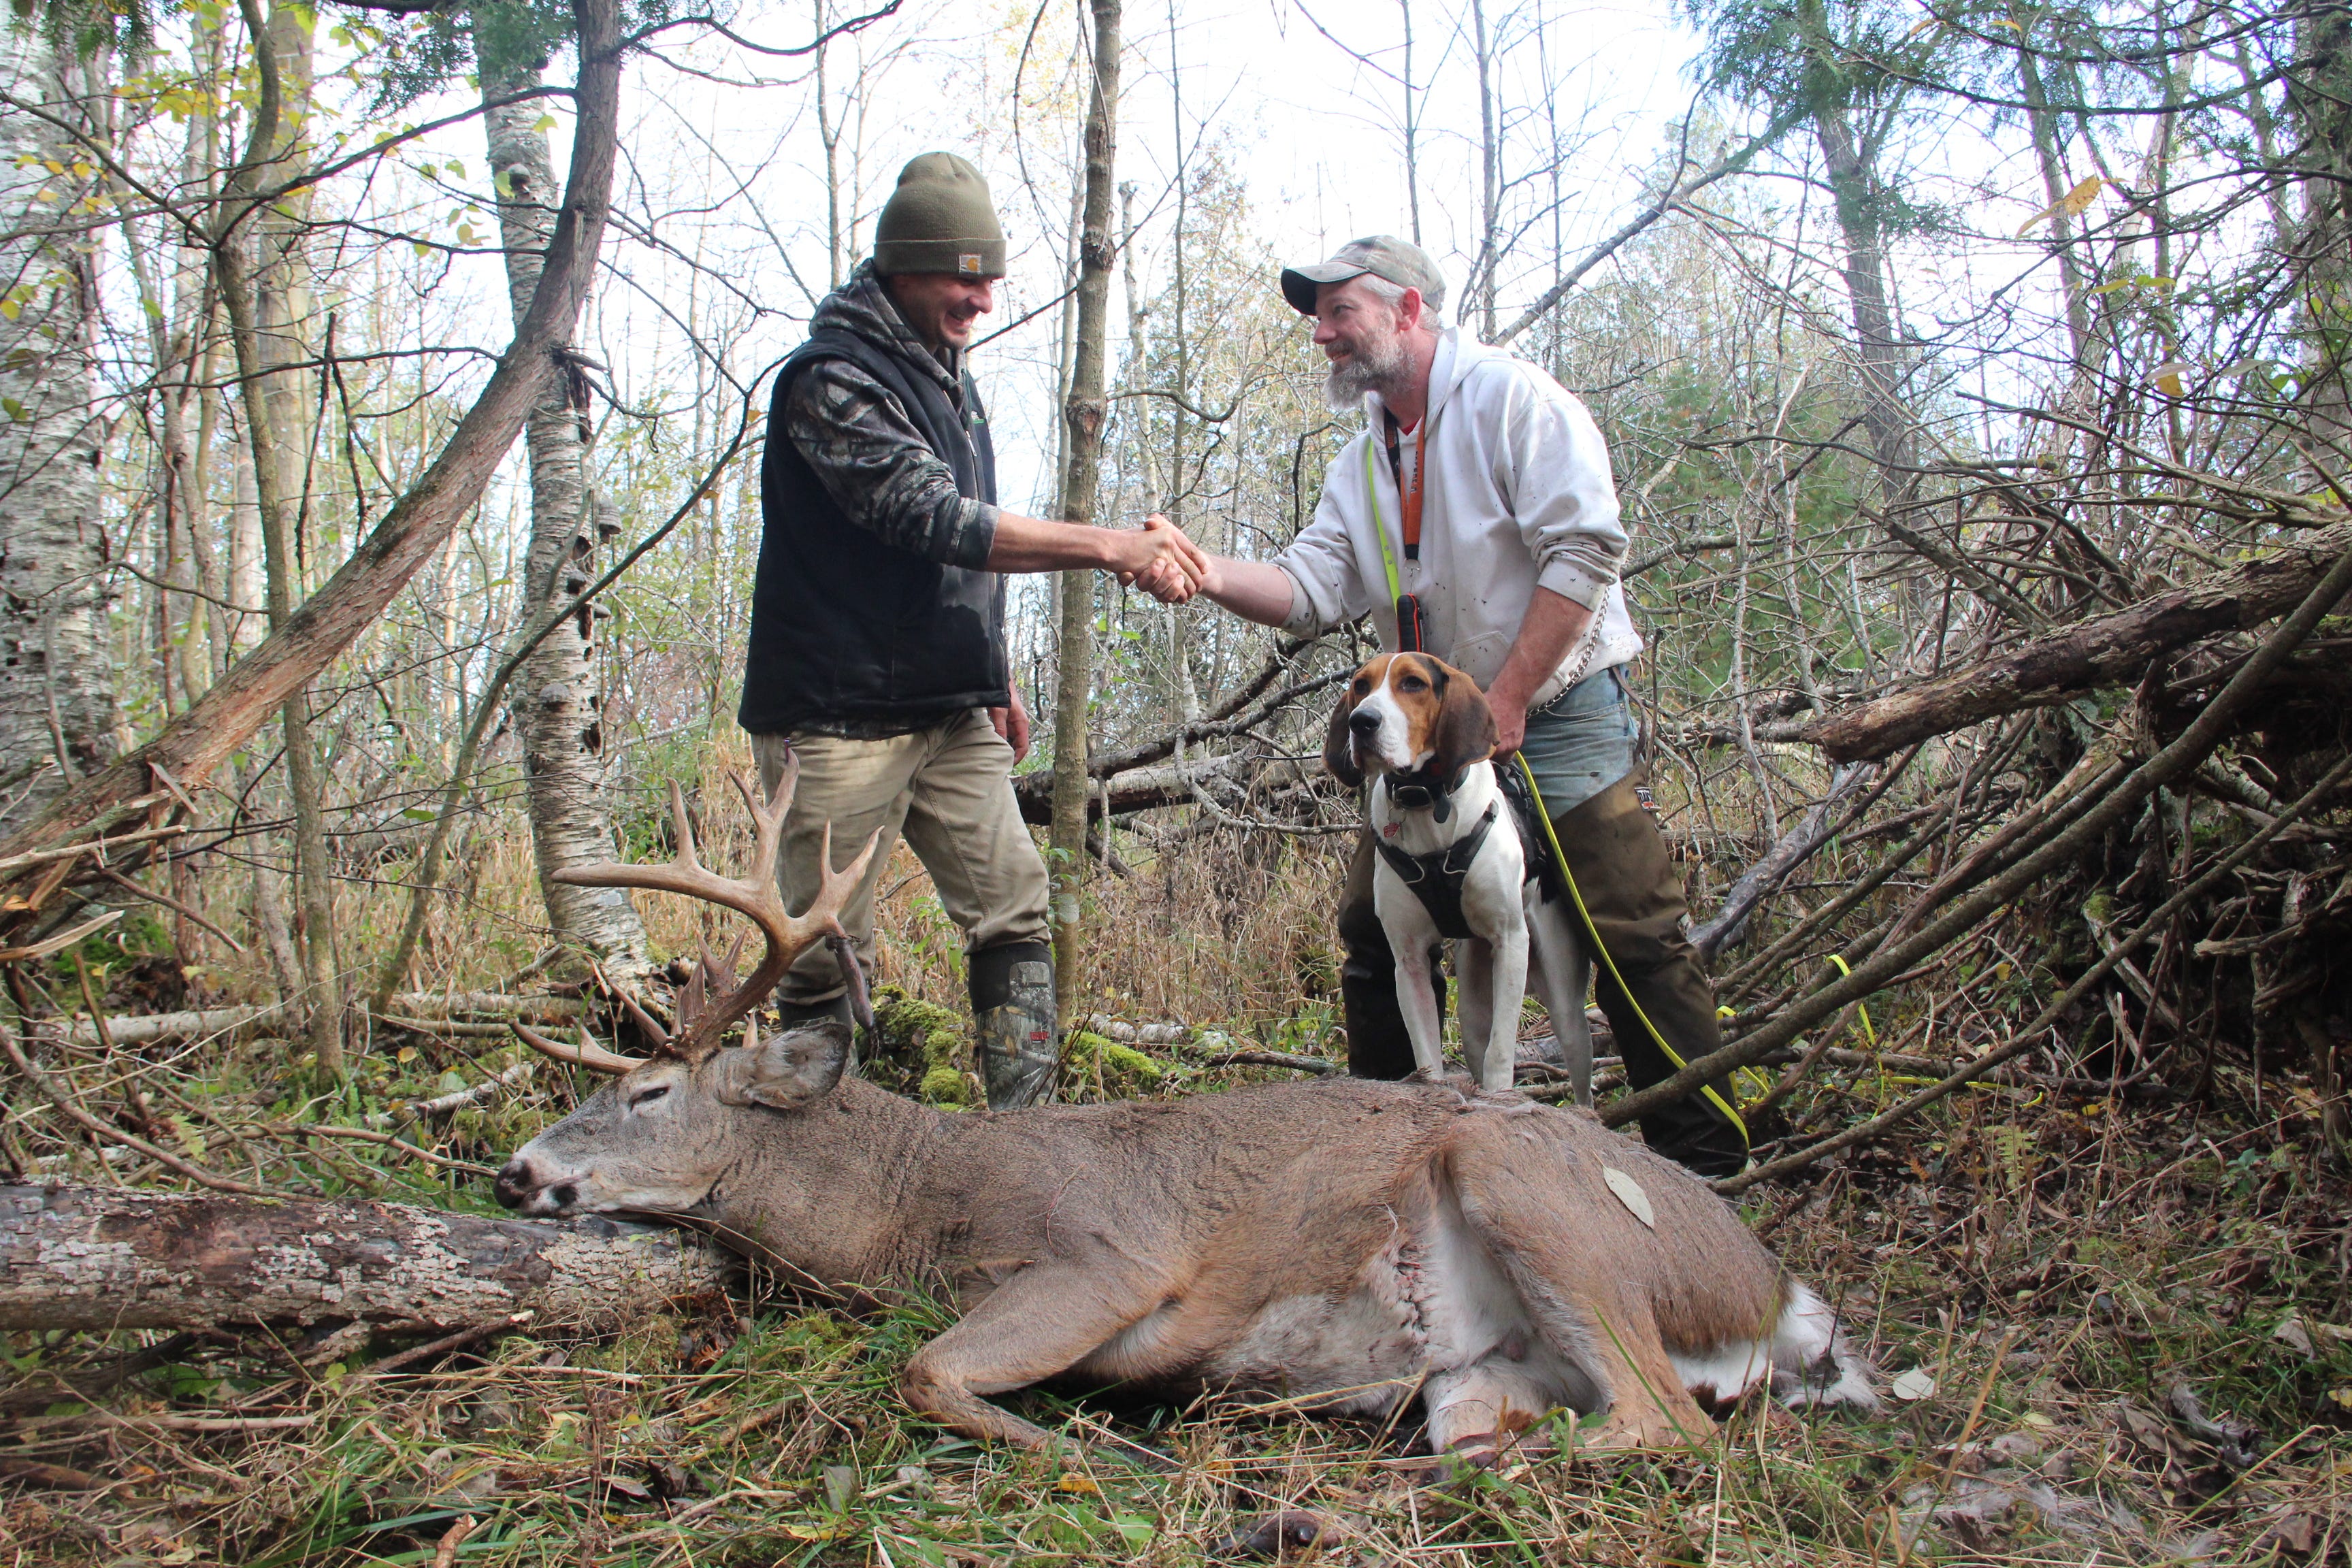 Droptine Deer Wisconsin Made Deer Hunting Journals 